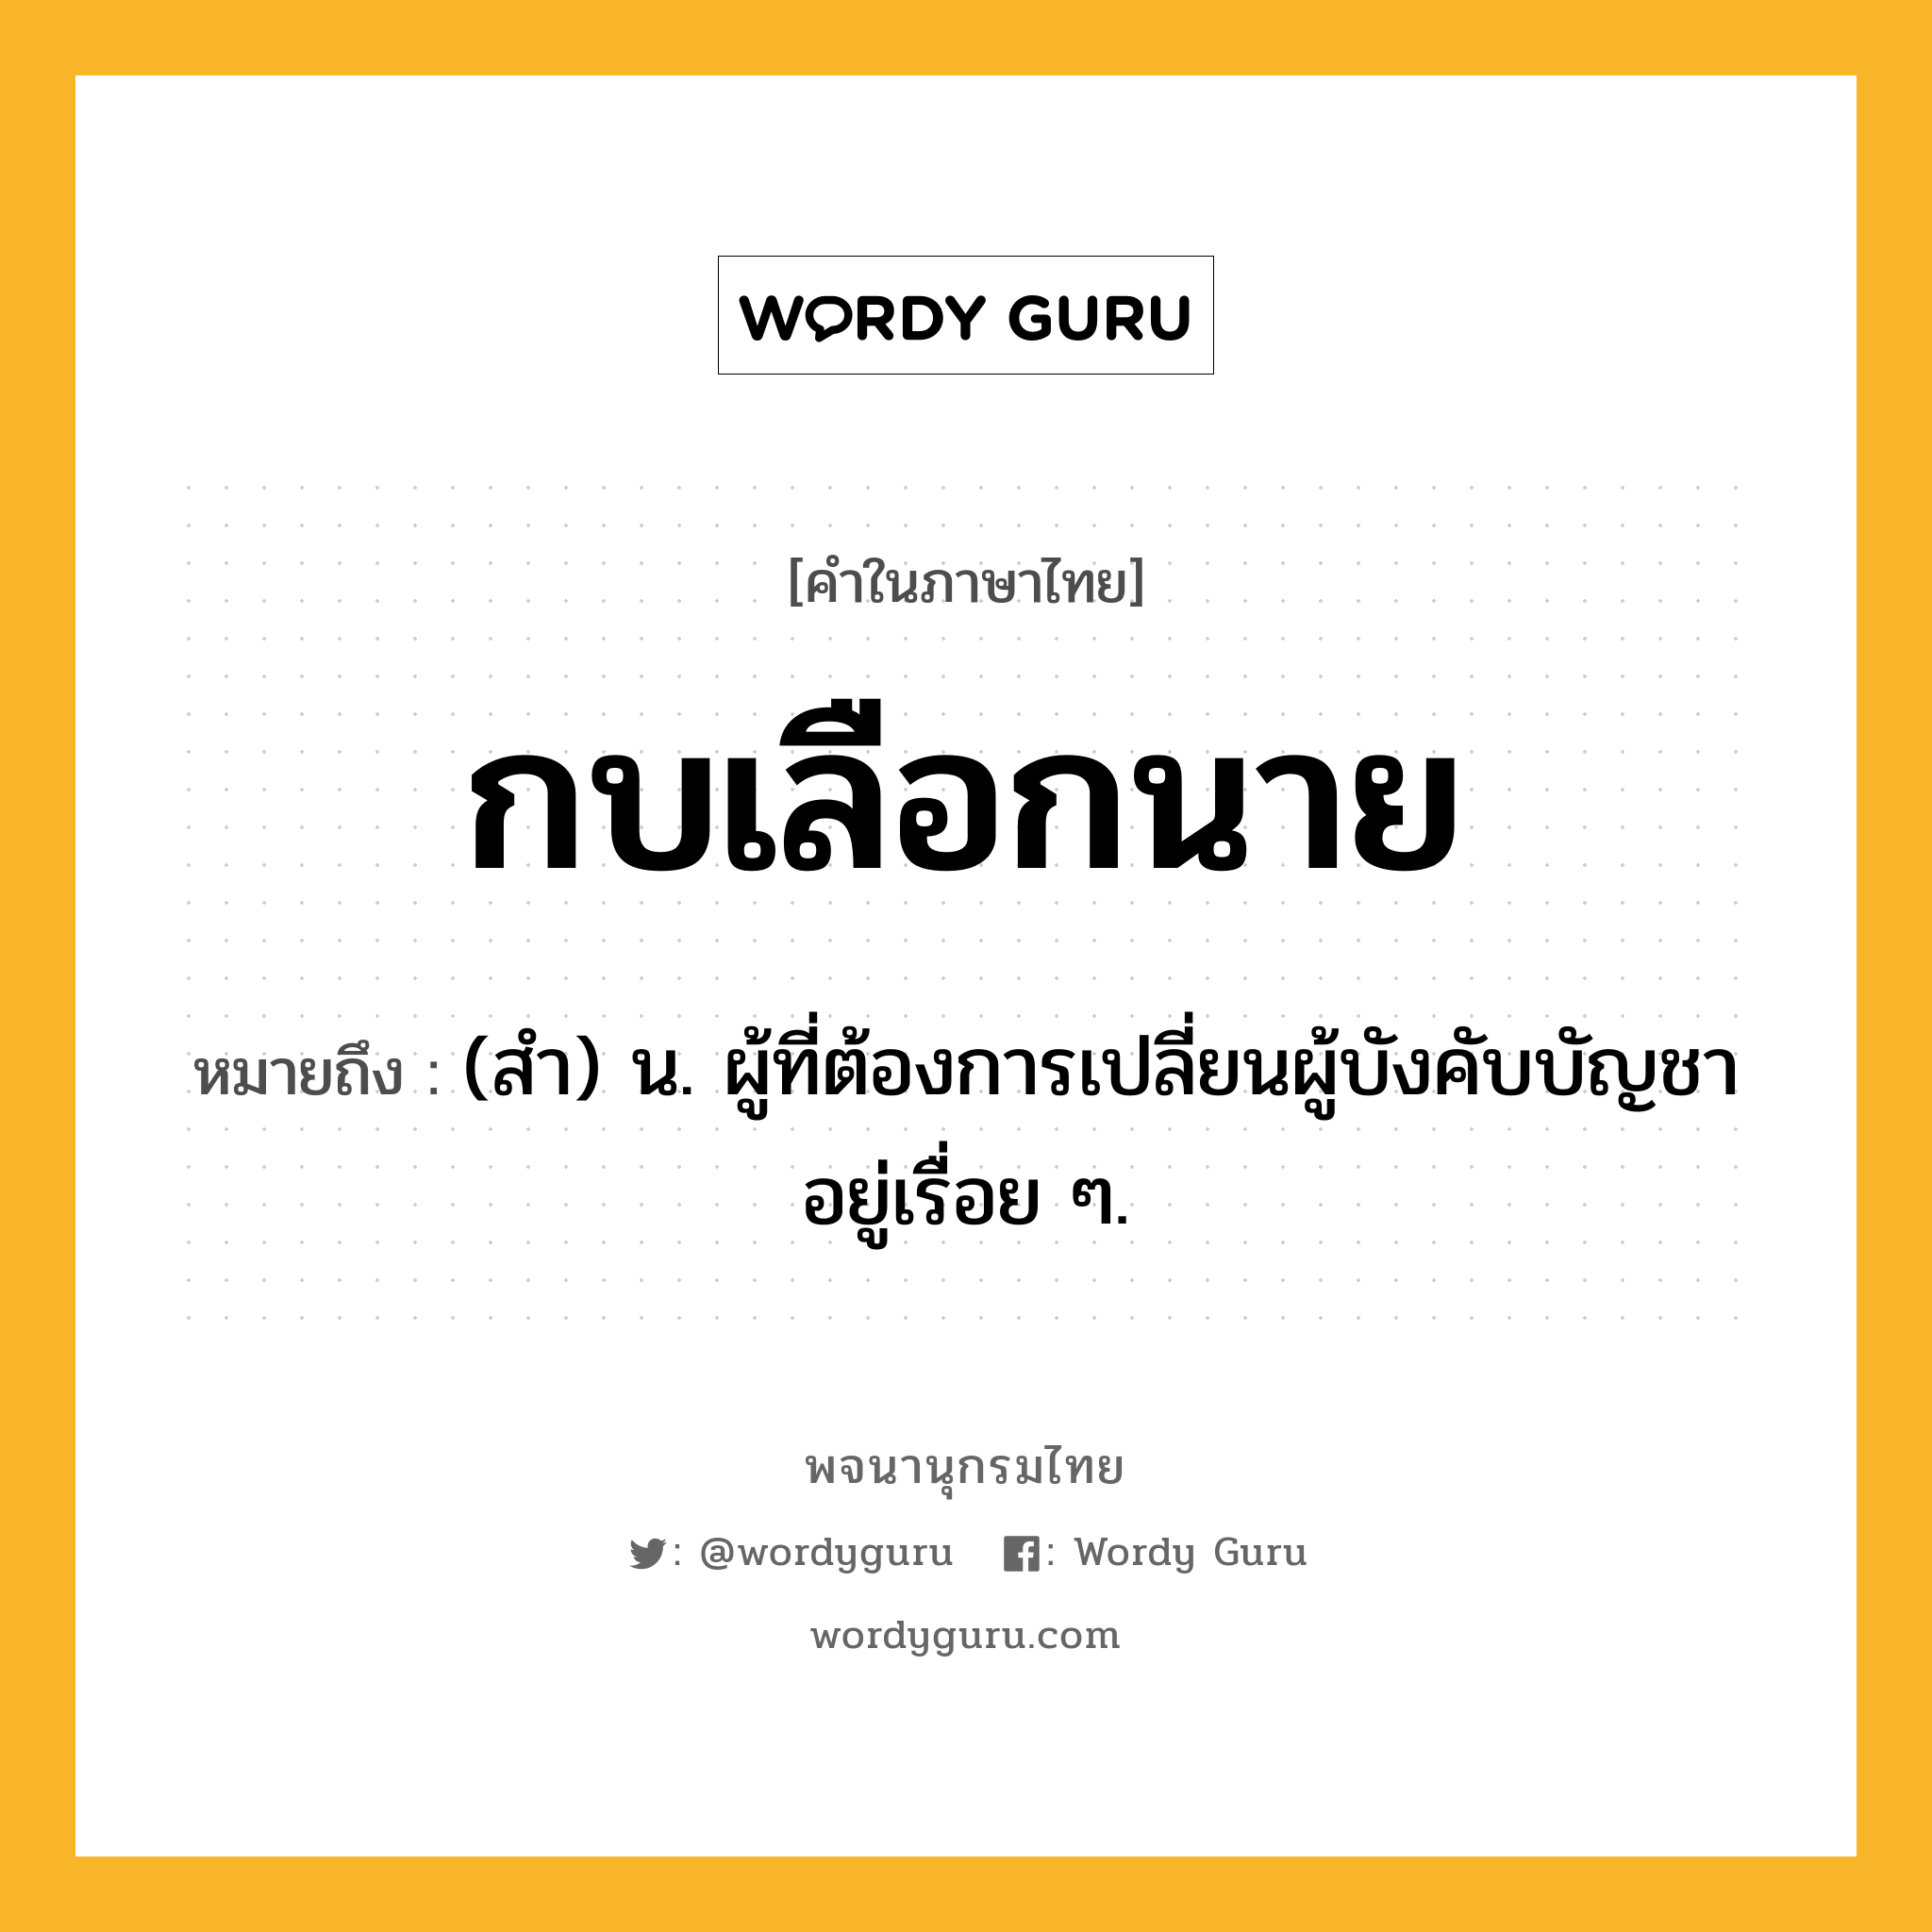 กบเลือกนาย ความหมาย หมายถึงอะไร?, คำในภาษาไทย กบเลือกนาย หมายถึง (สํา) น. ผู้ที่ต้องการเปลี่ยนผู้บังคับบัญชาอยู่เรื่อย ๆ.